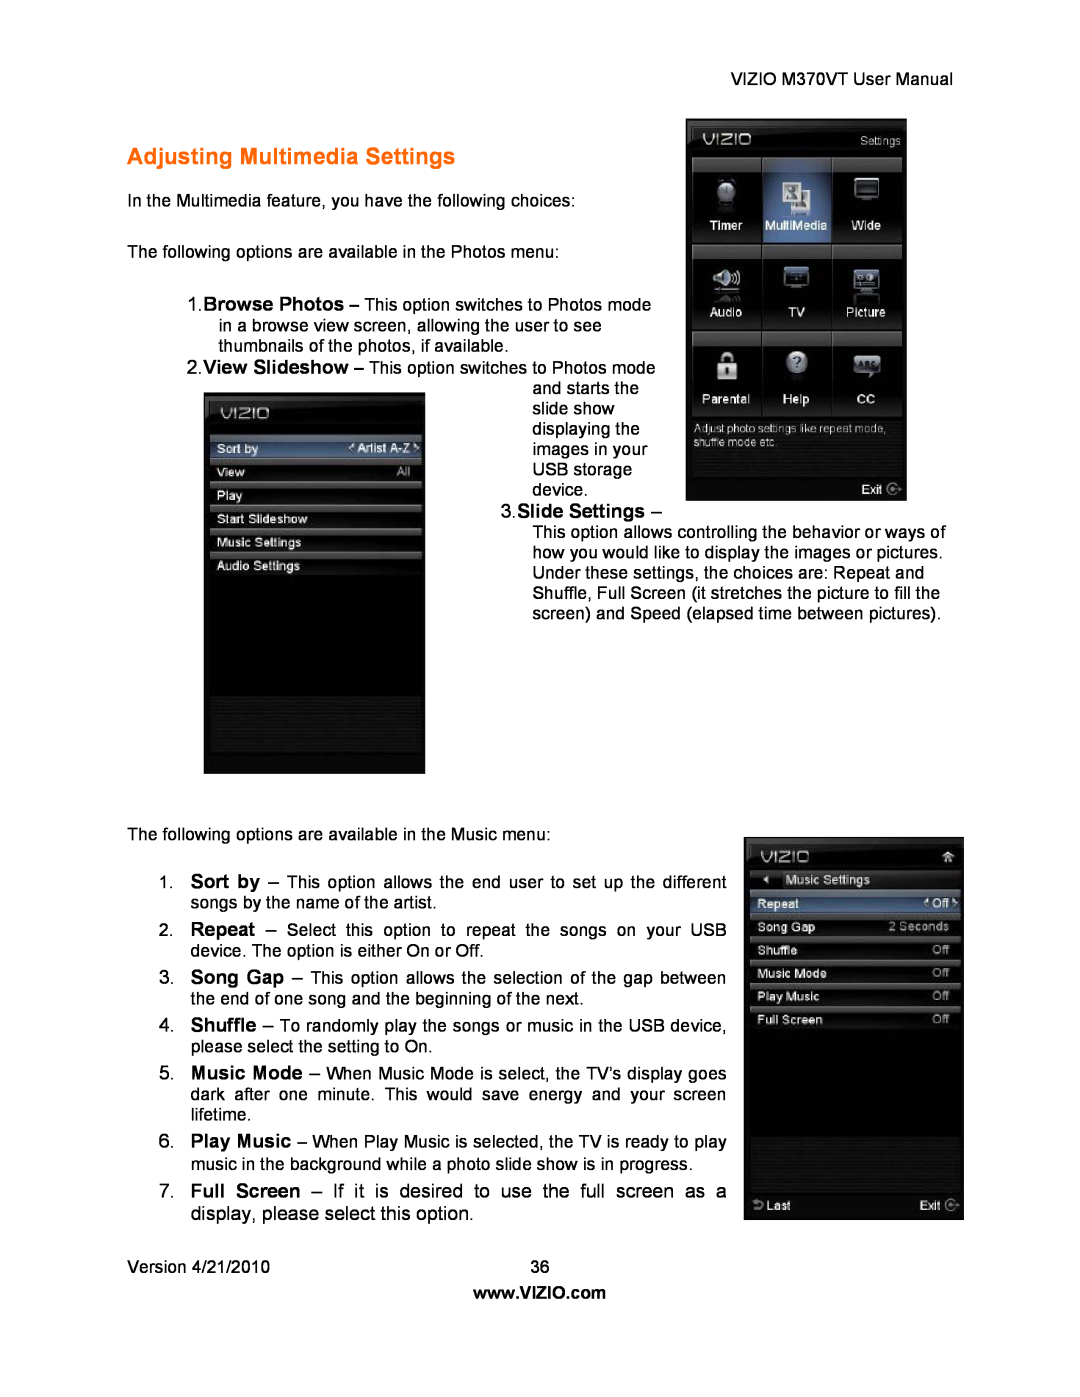 Vizio M370VT manual Adjusting Multimedia Settings, Slide Settings 